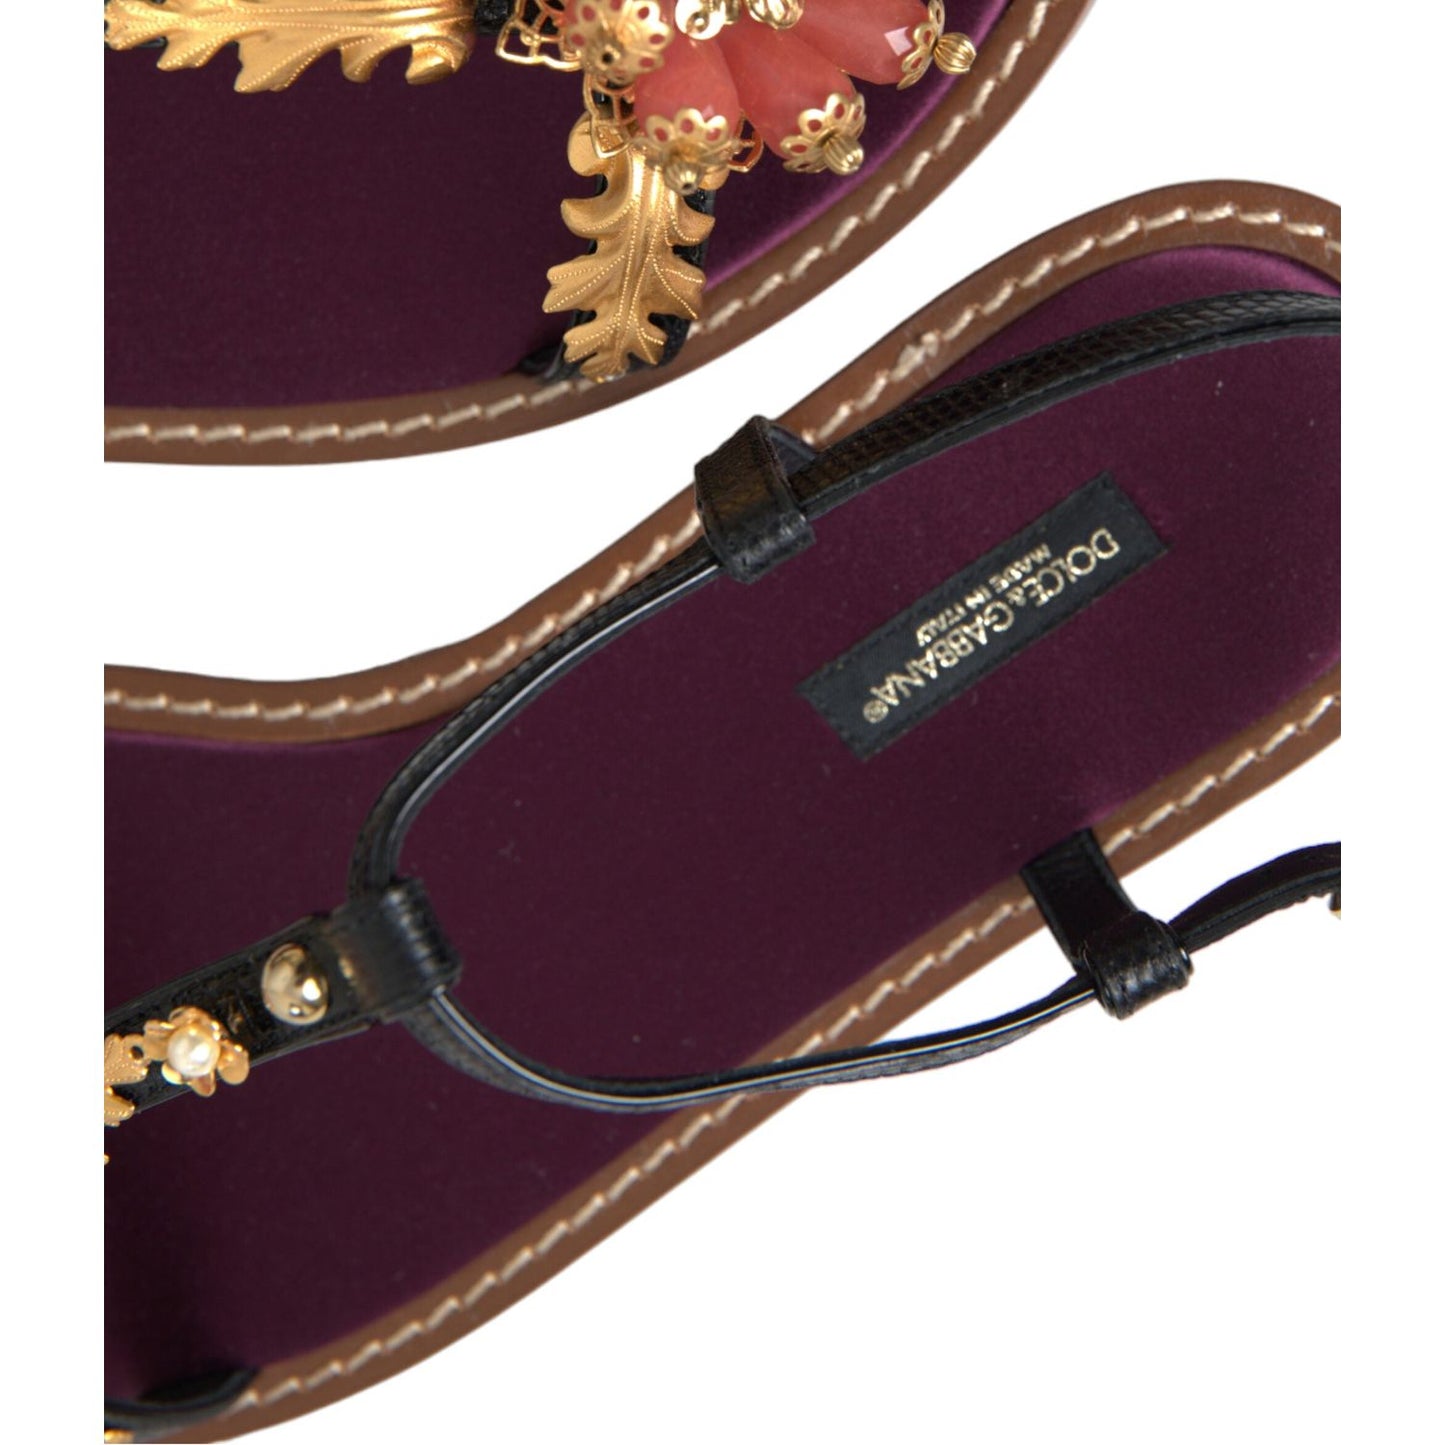 Dolce & Gabbana Elegant Crystal-Adorned Flat Sandals black-crystal-gold-sandals-leather-shoes